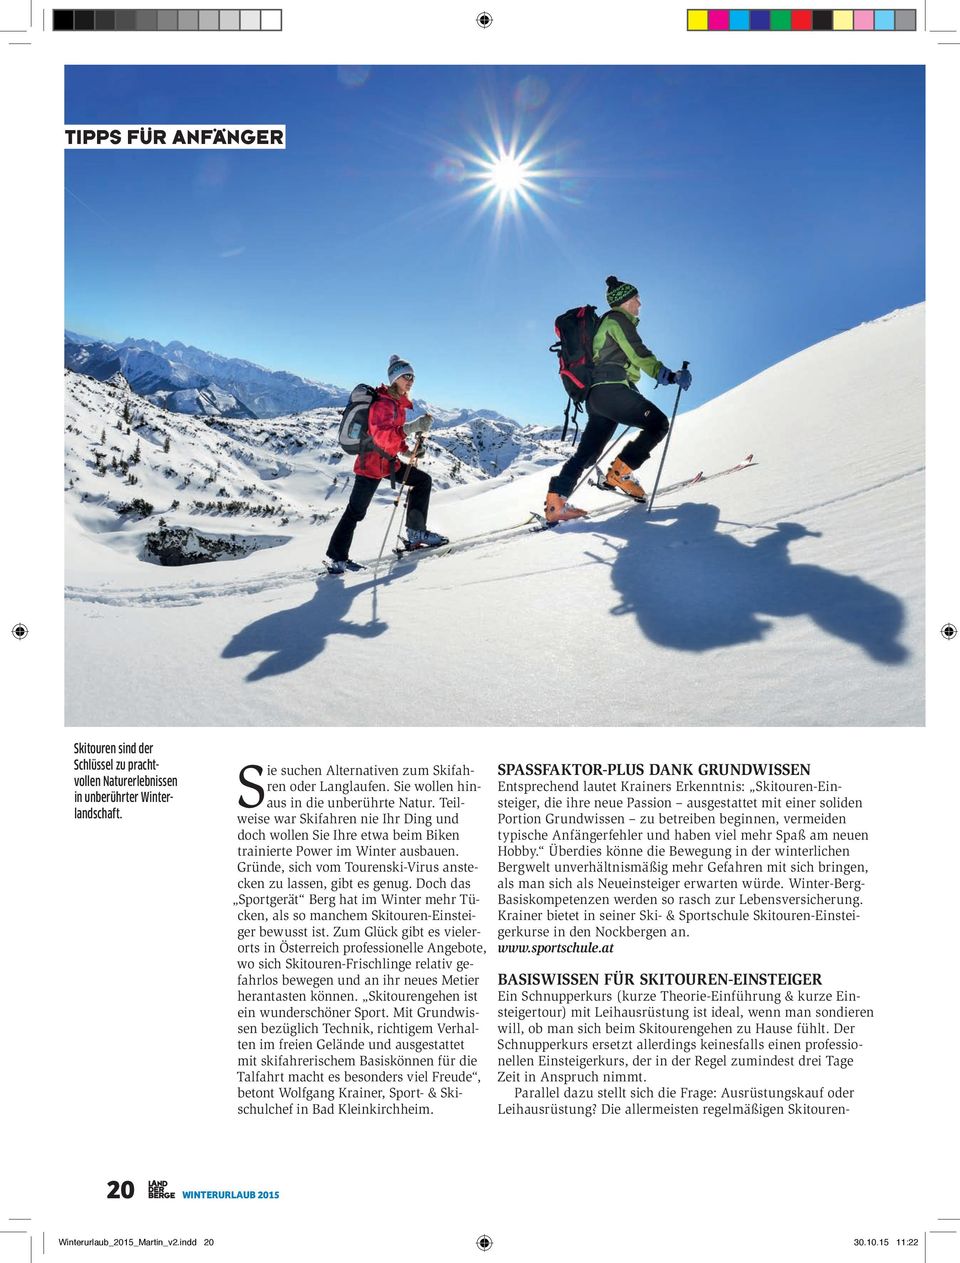 Gründe, sich vom Tourenski-Virus anstecken zu lassen, gibt es genug. Doch das Sportgerät Berg hat im Winter mehr Tücken, als so manchem Skitouren-Einsteiger bewusst ist.